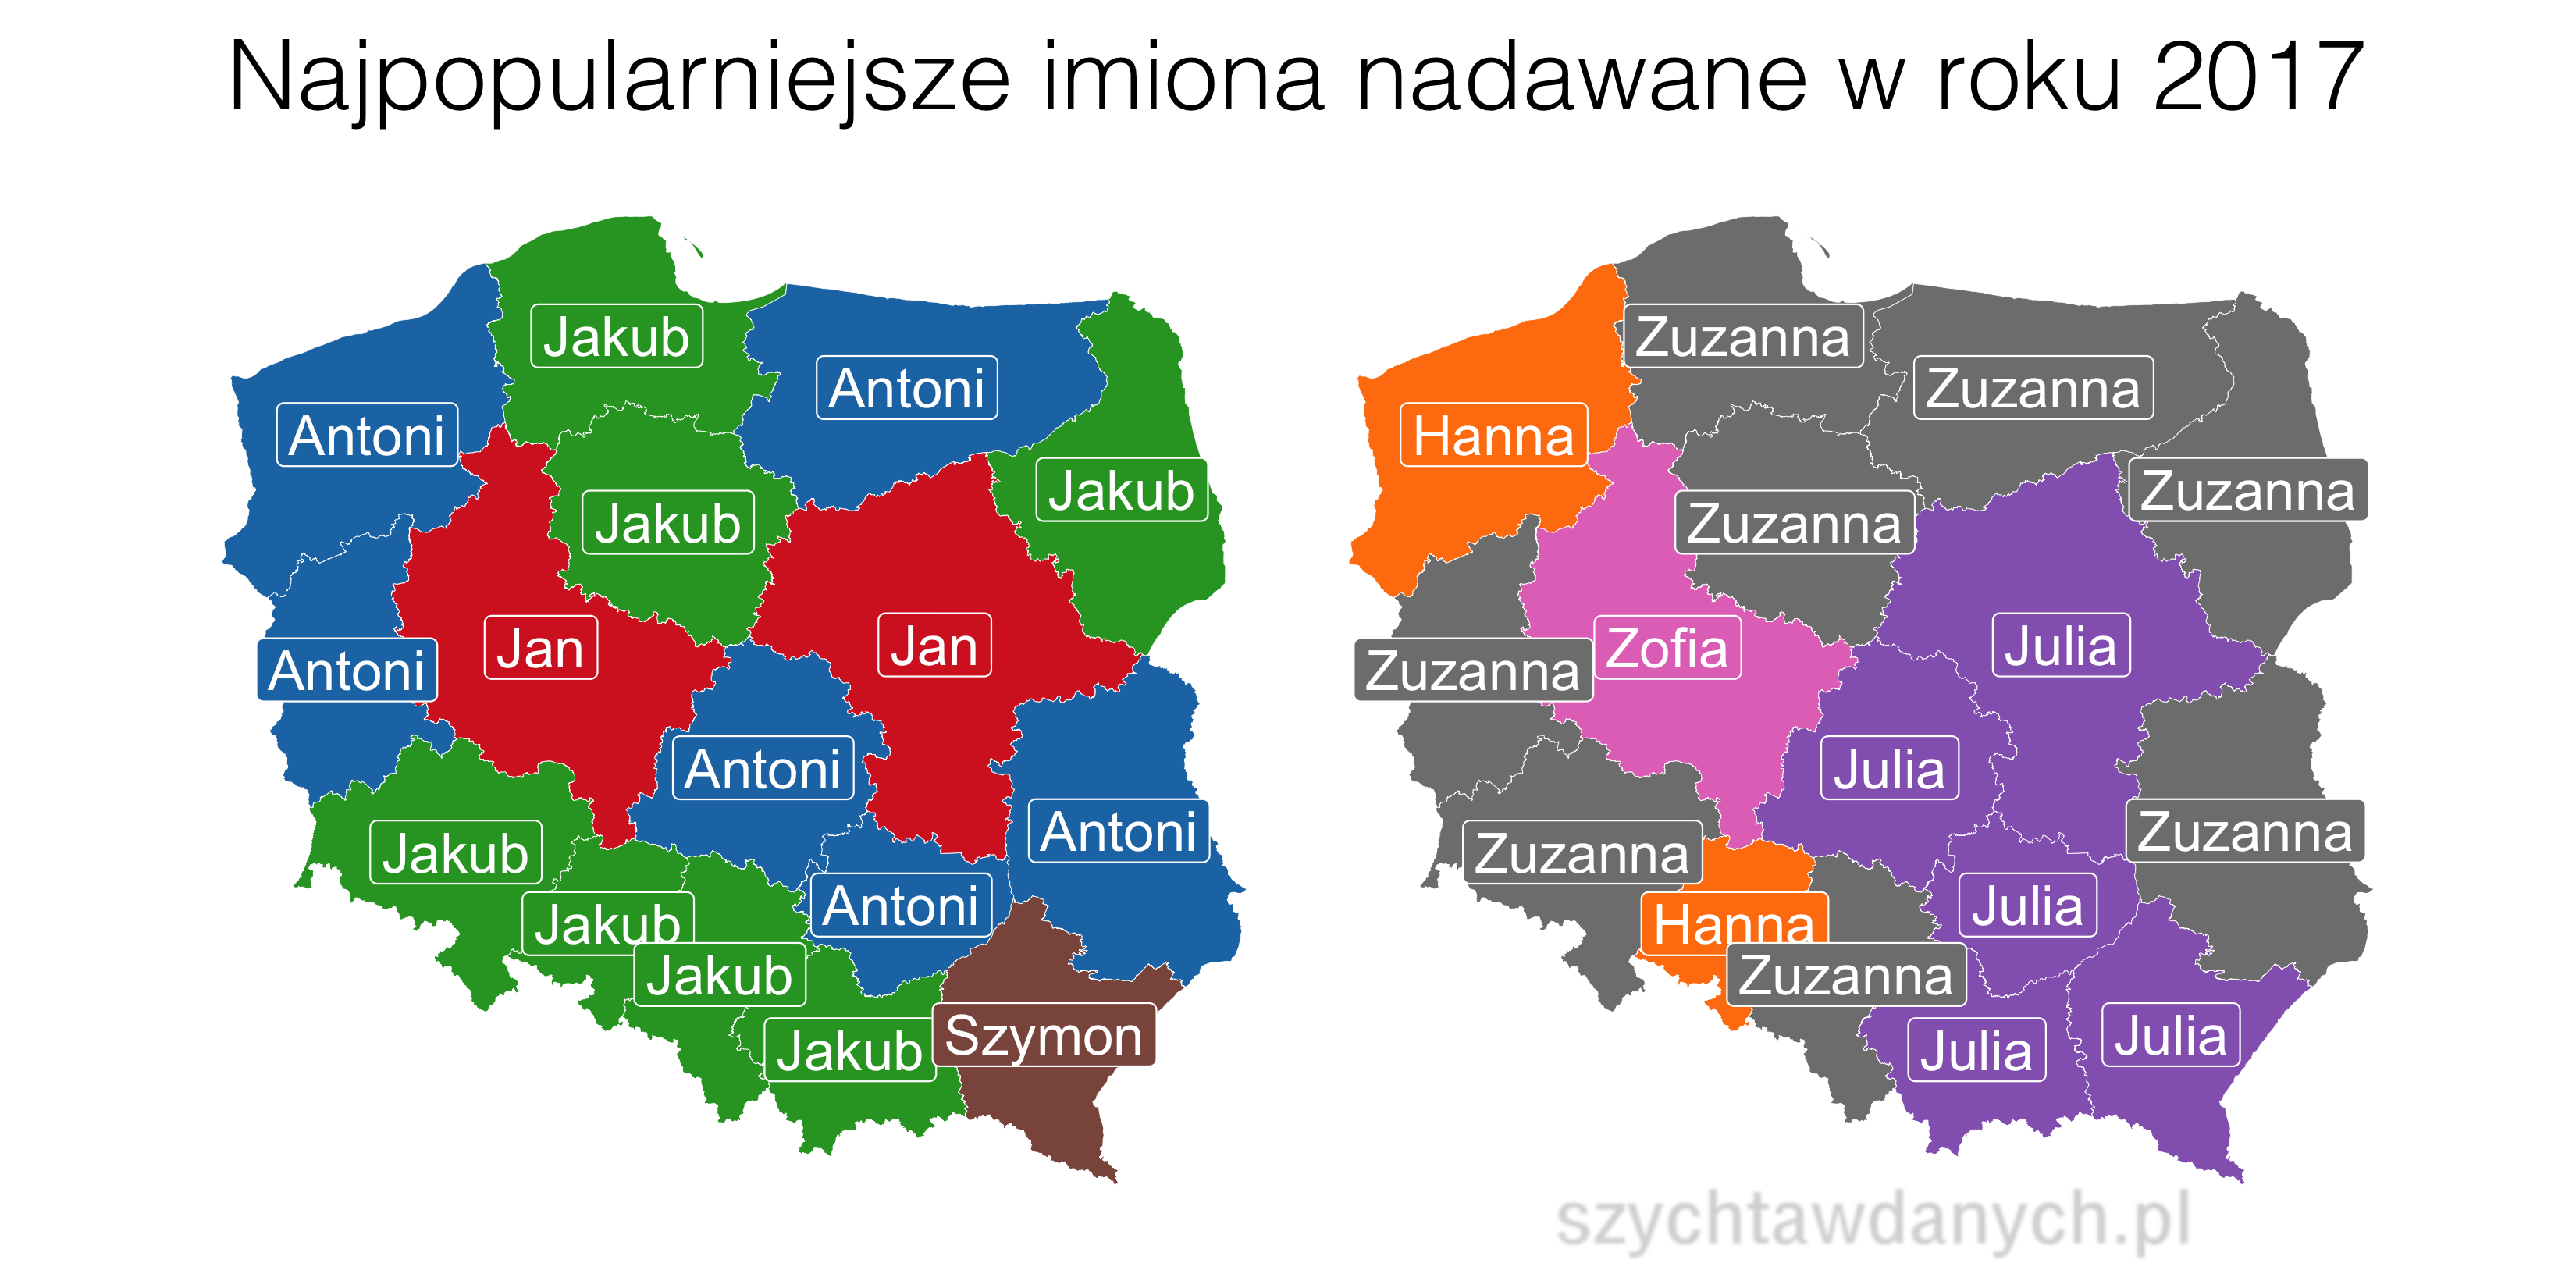 Jakie imiona nadaje się w Polsce?